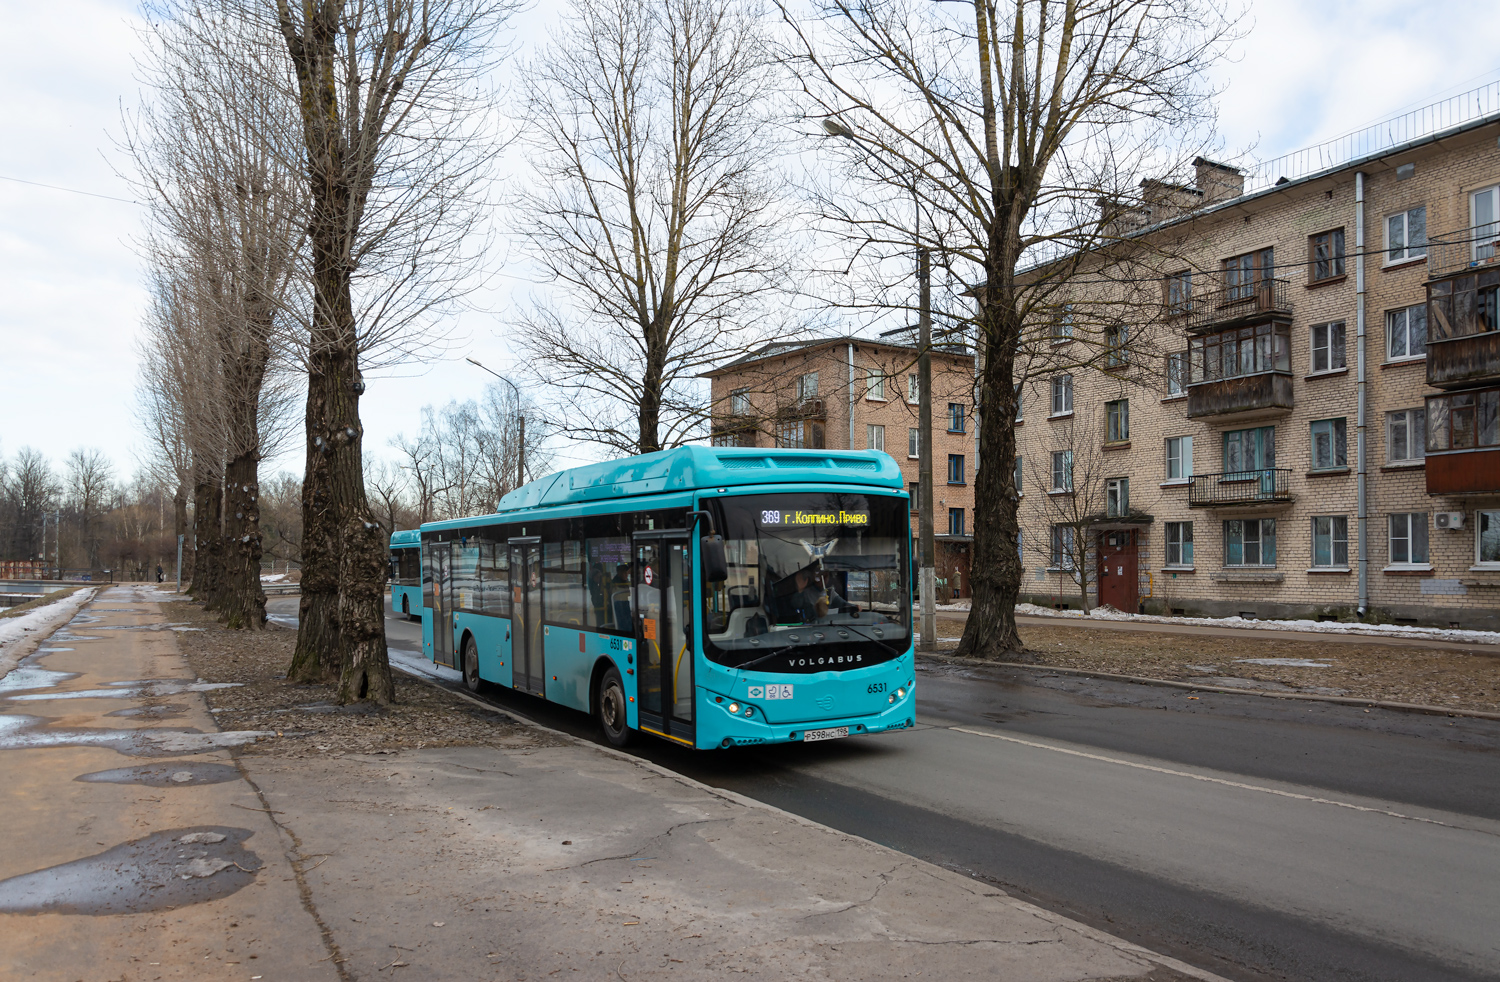 Petersburg, Volgabus-5270.G4 (CNG) # 6531